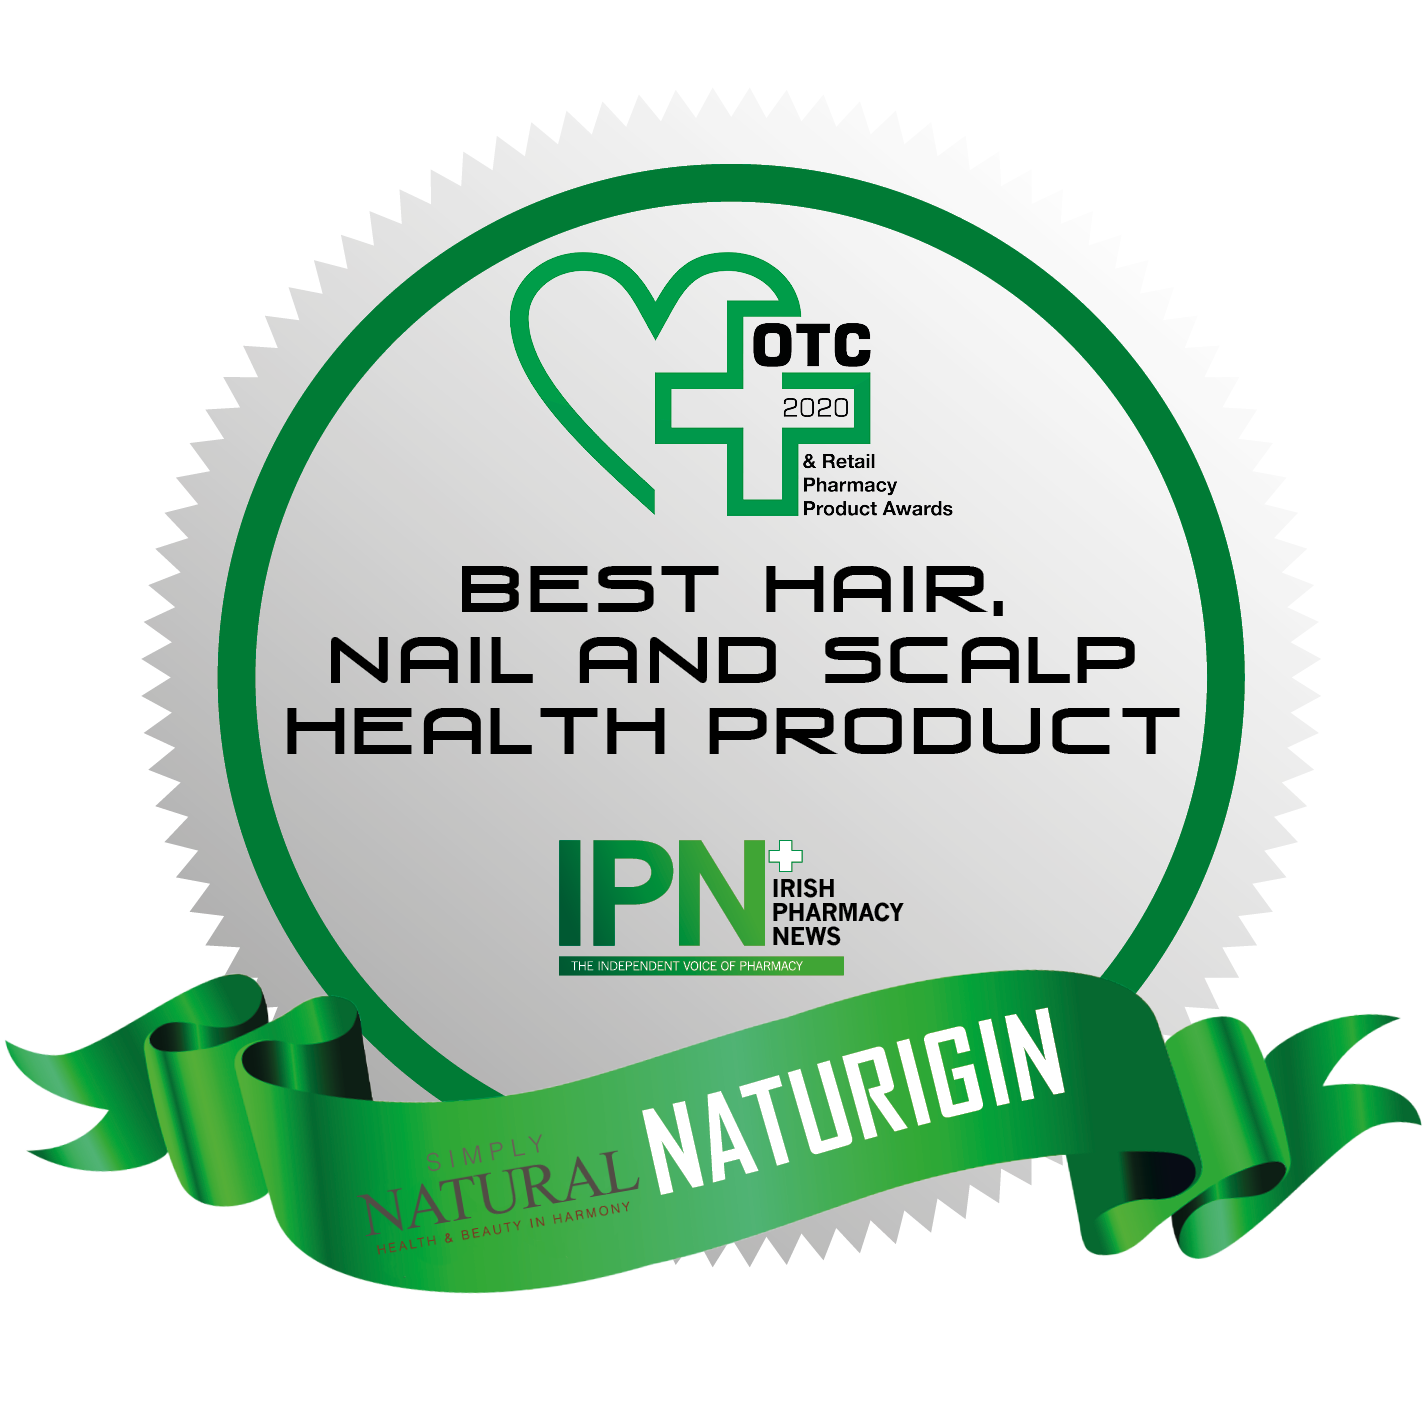 Naturigin-SimplyNatural-prize_c3cf058b-b08f-4c30-b917-429e38c09ece.png